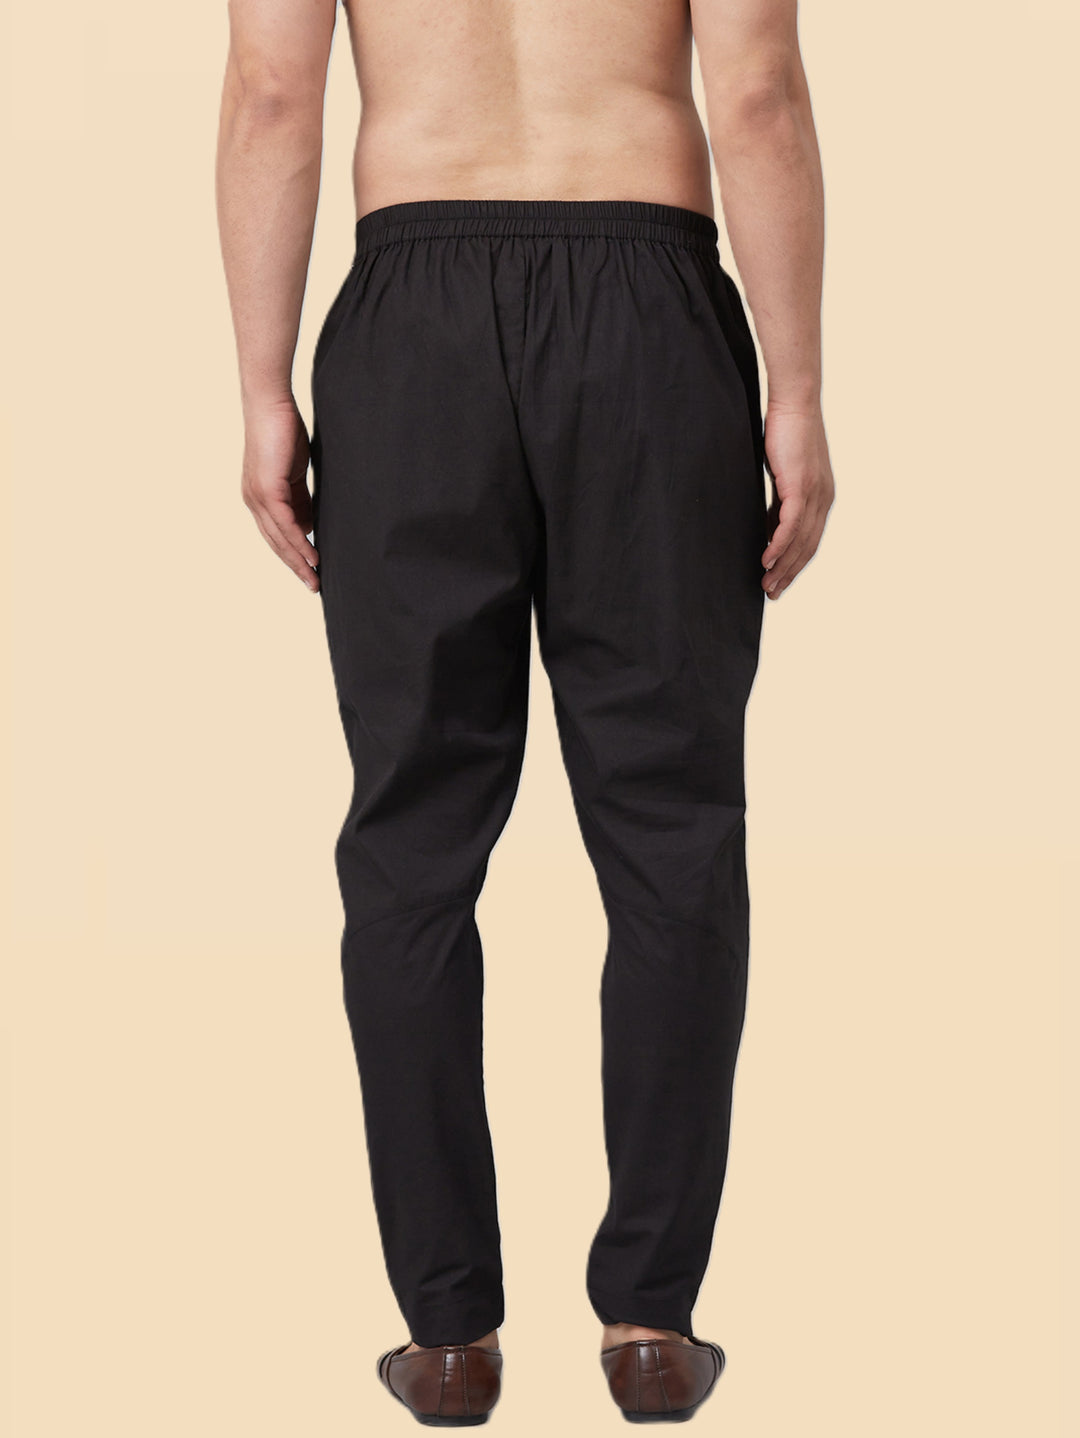 Men's Black Cotton Trousers style pant